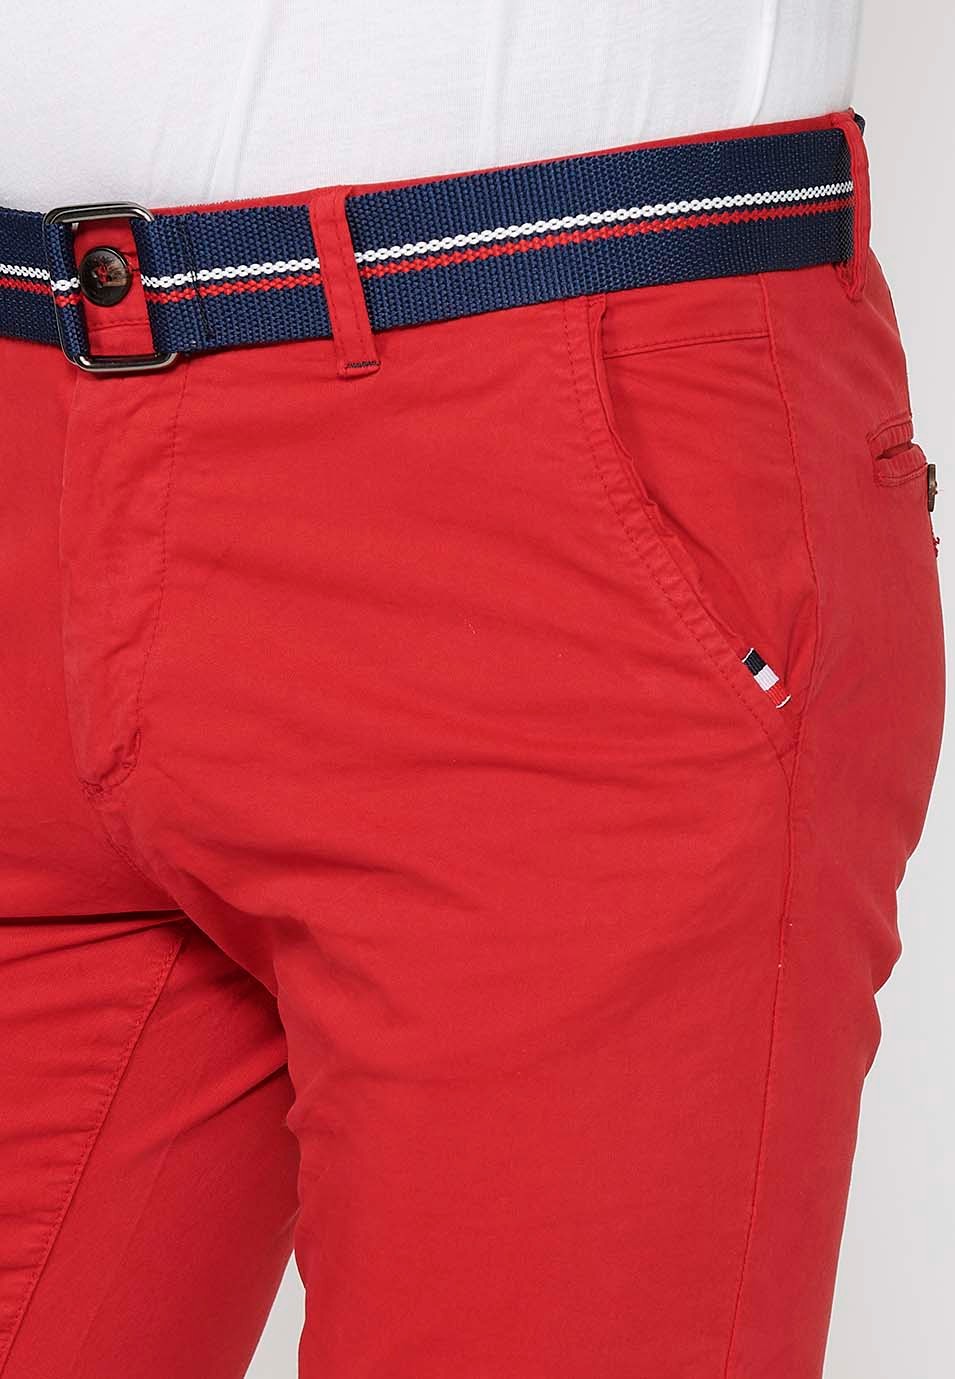 Pantalons curts acabats en volta amb Tancament davanter amb cremallera i botó i cinturó de Color Roig per a Home 5